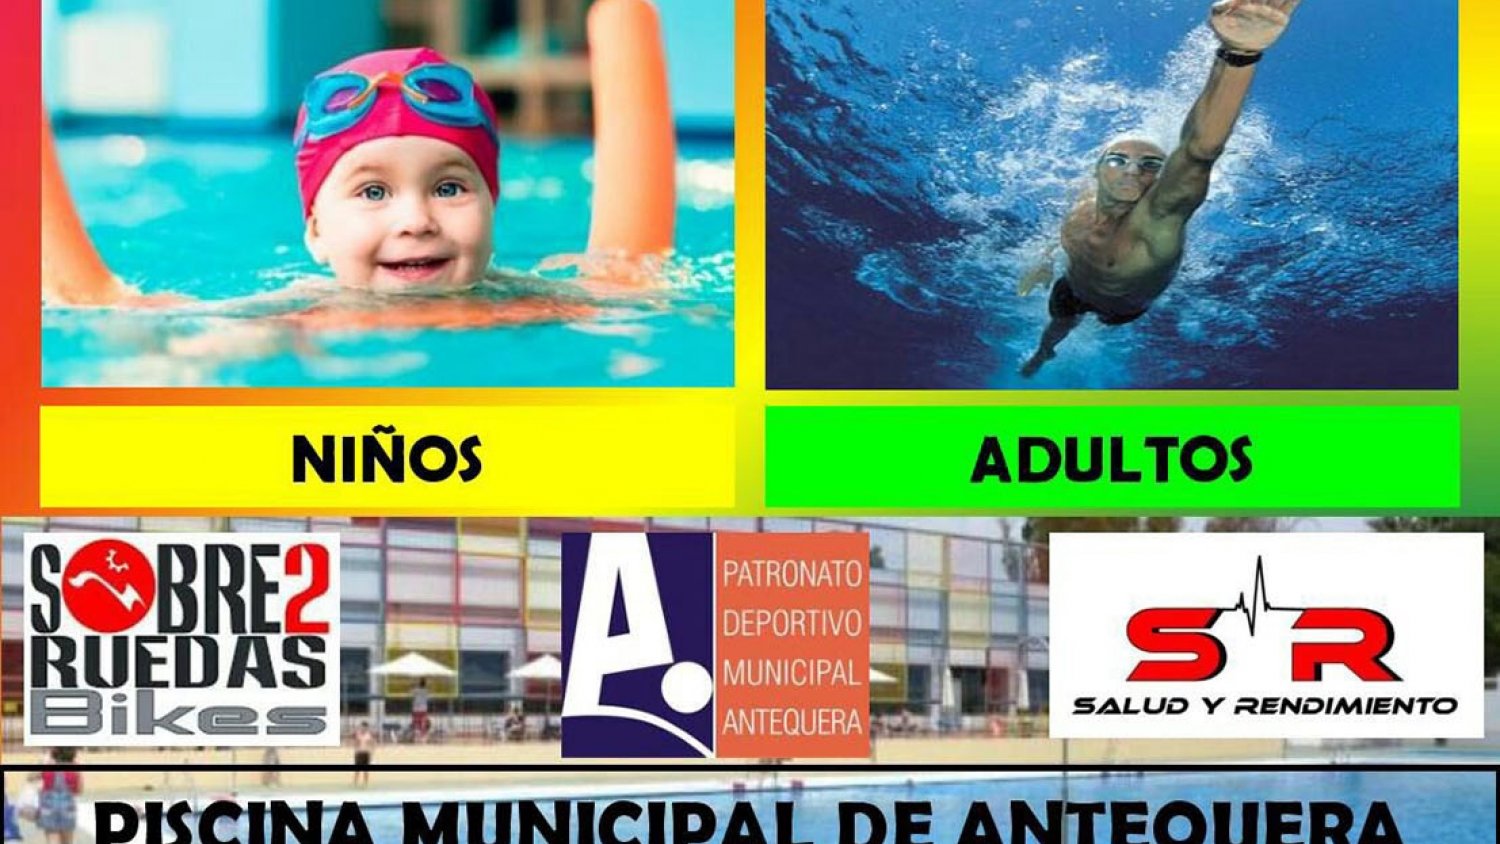 La Piscina Municipal de Verano de Antequera abrirá sus puertas del 24 de junio al 10 de septiembre